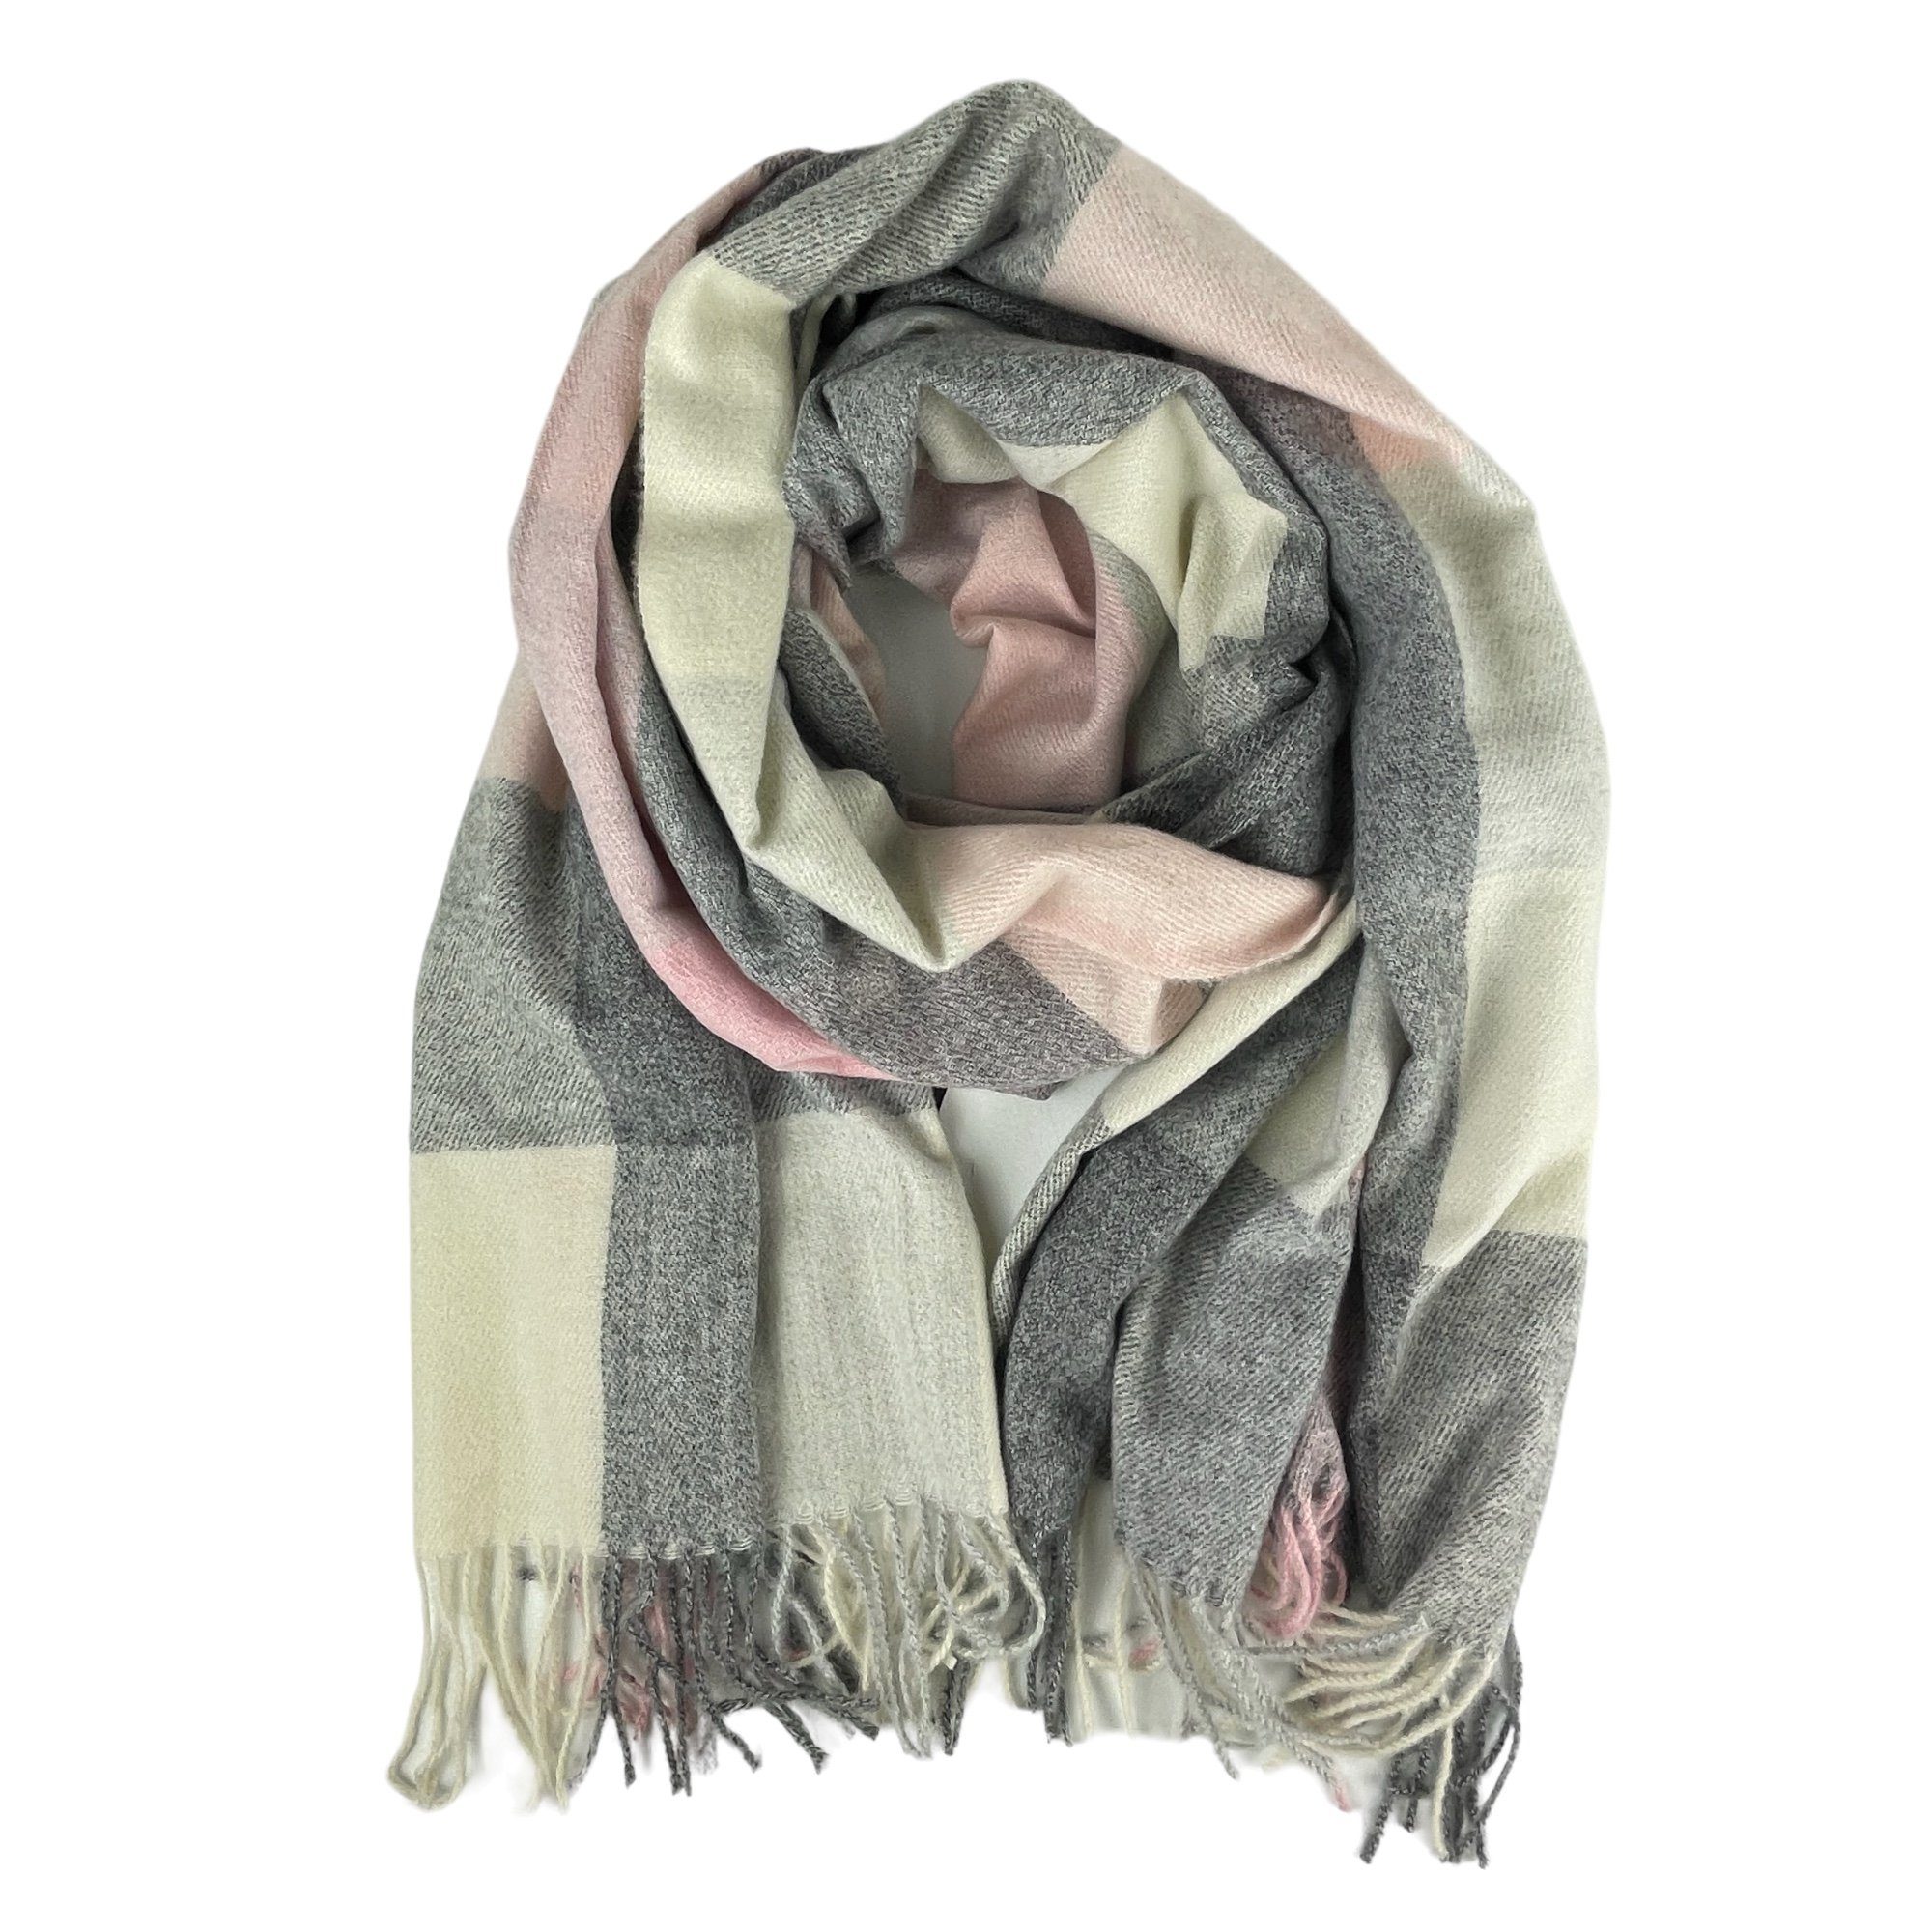 Taschen4life Schal großer Damen Schal mit Fransen, modernes Karomuster, tolle Farbkombination, Herbst/Winter Accessoires rosa grau